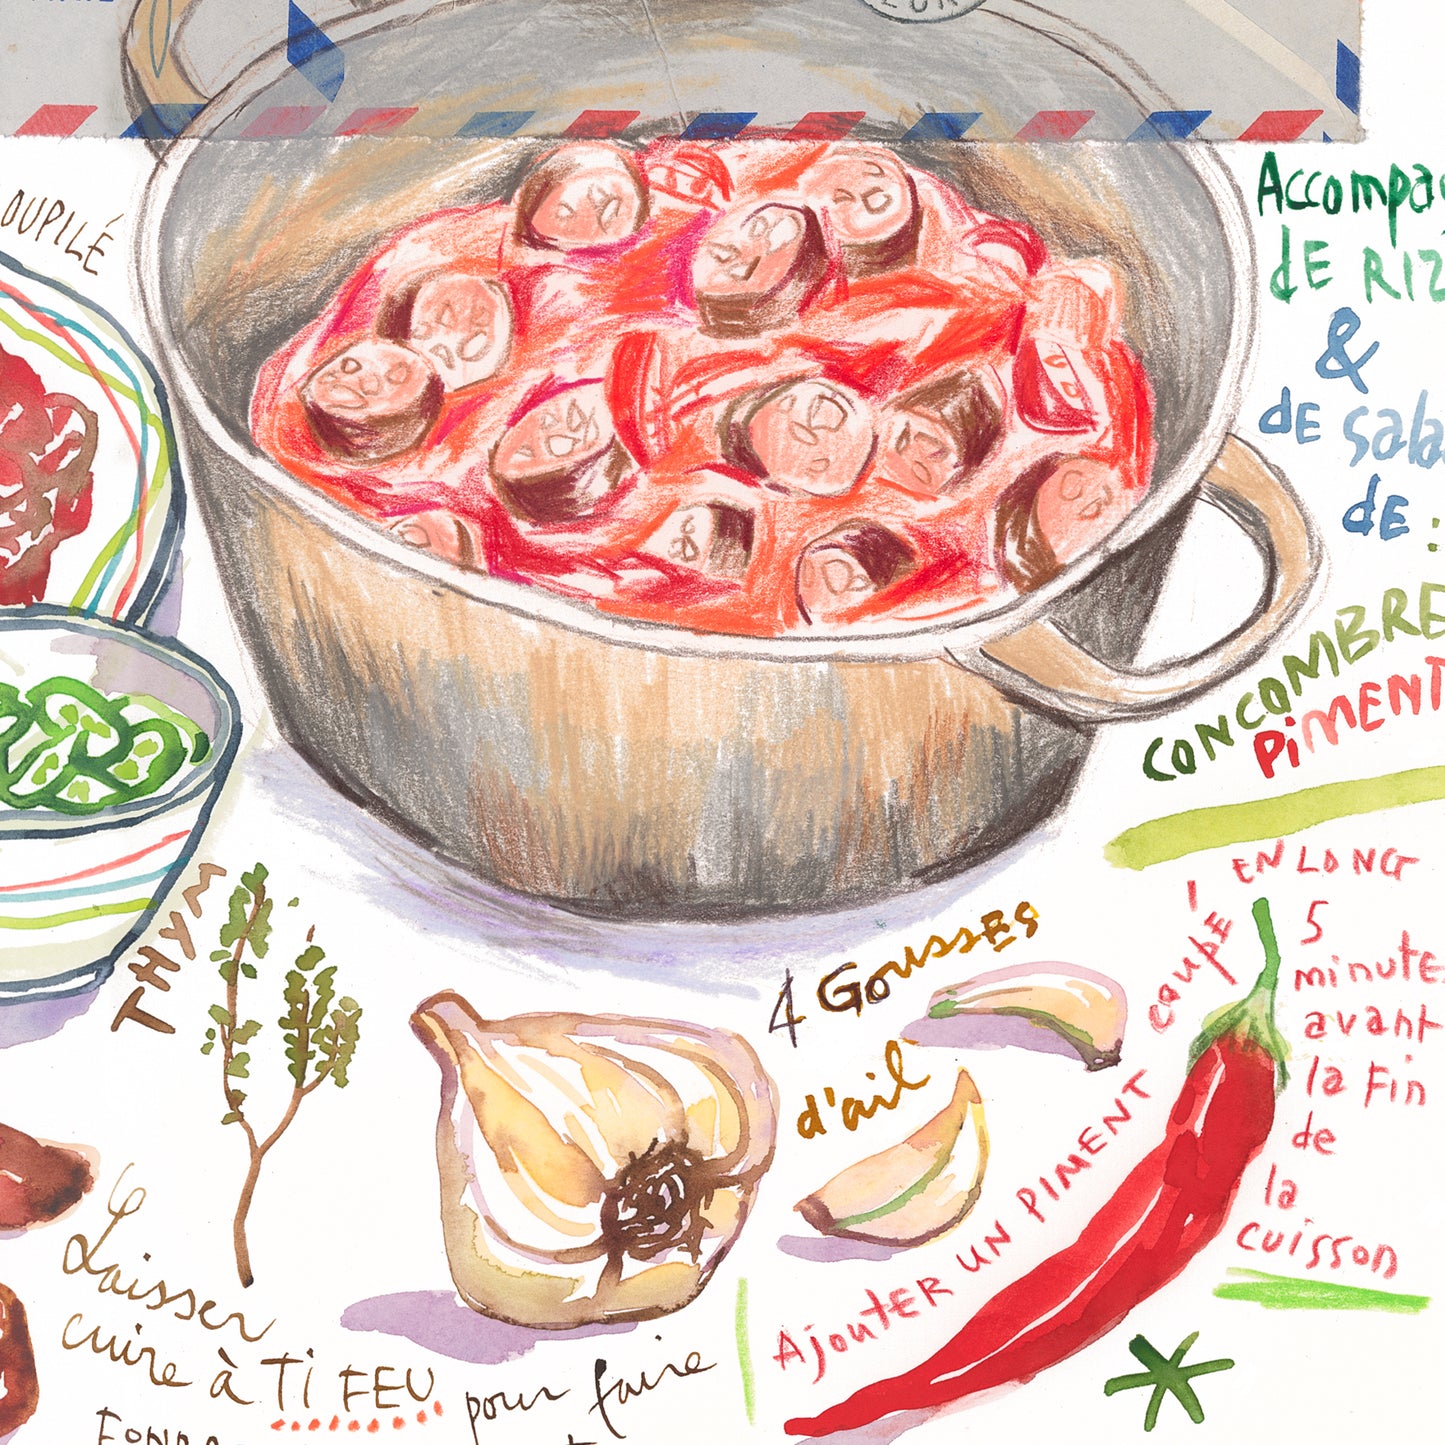 Rougail Saucisse - Indian Ocean recipe